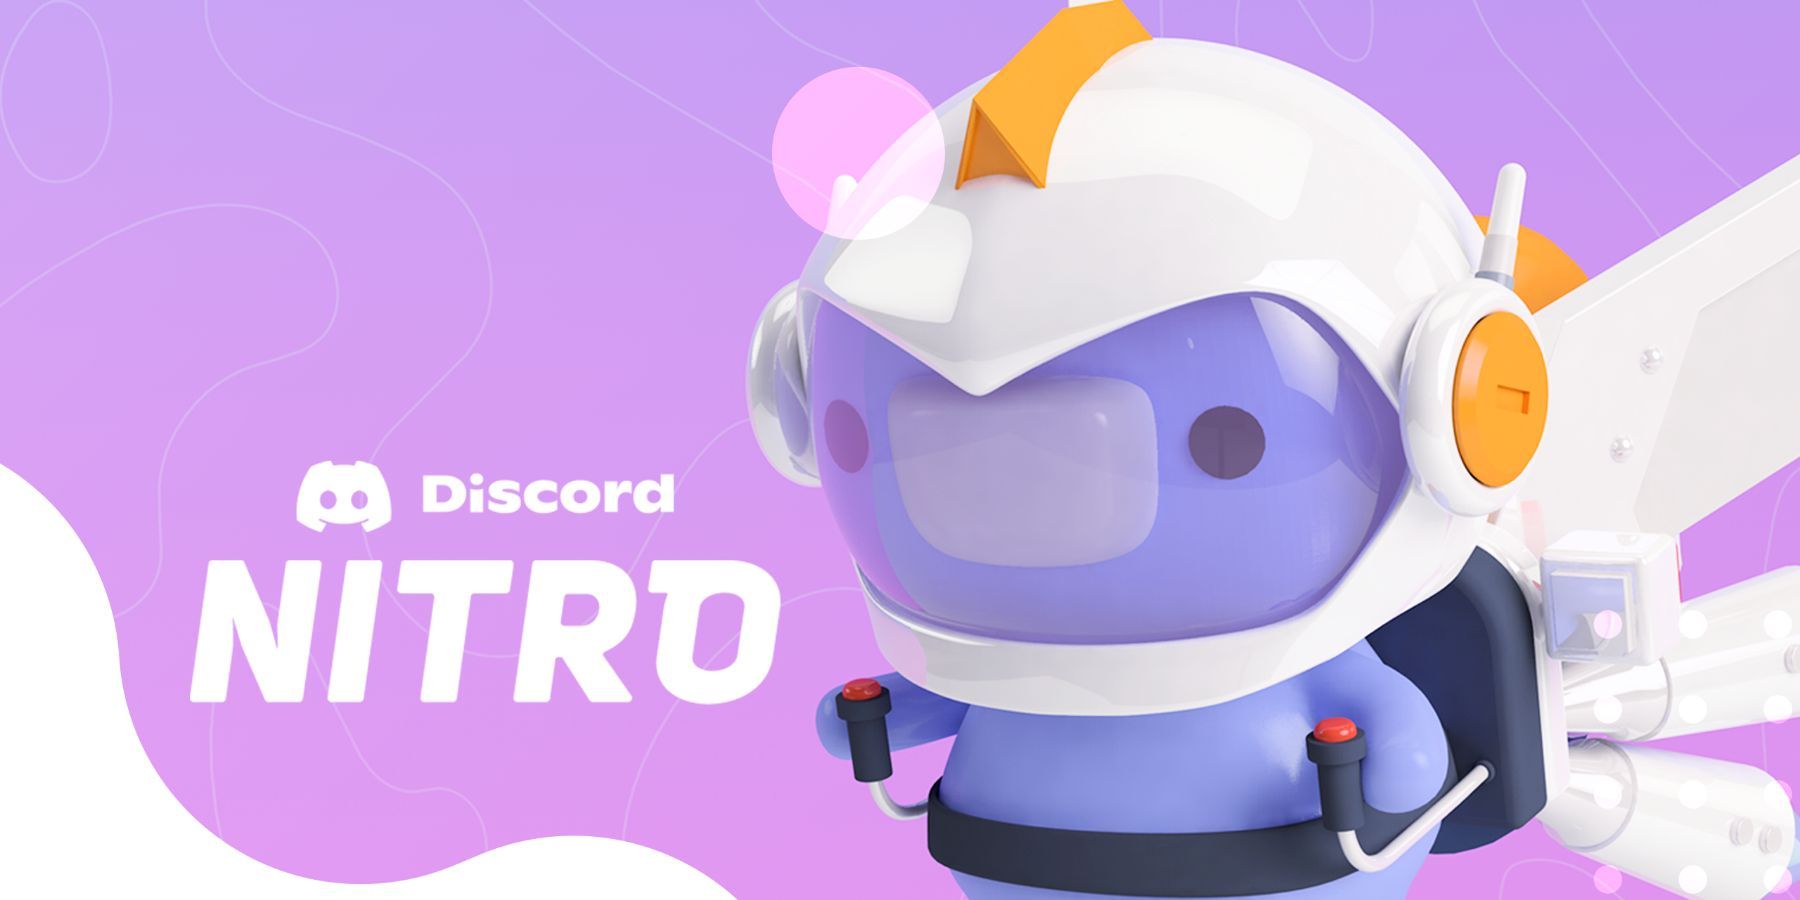 discord-nitro-promo-art